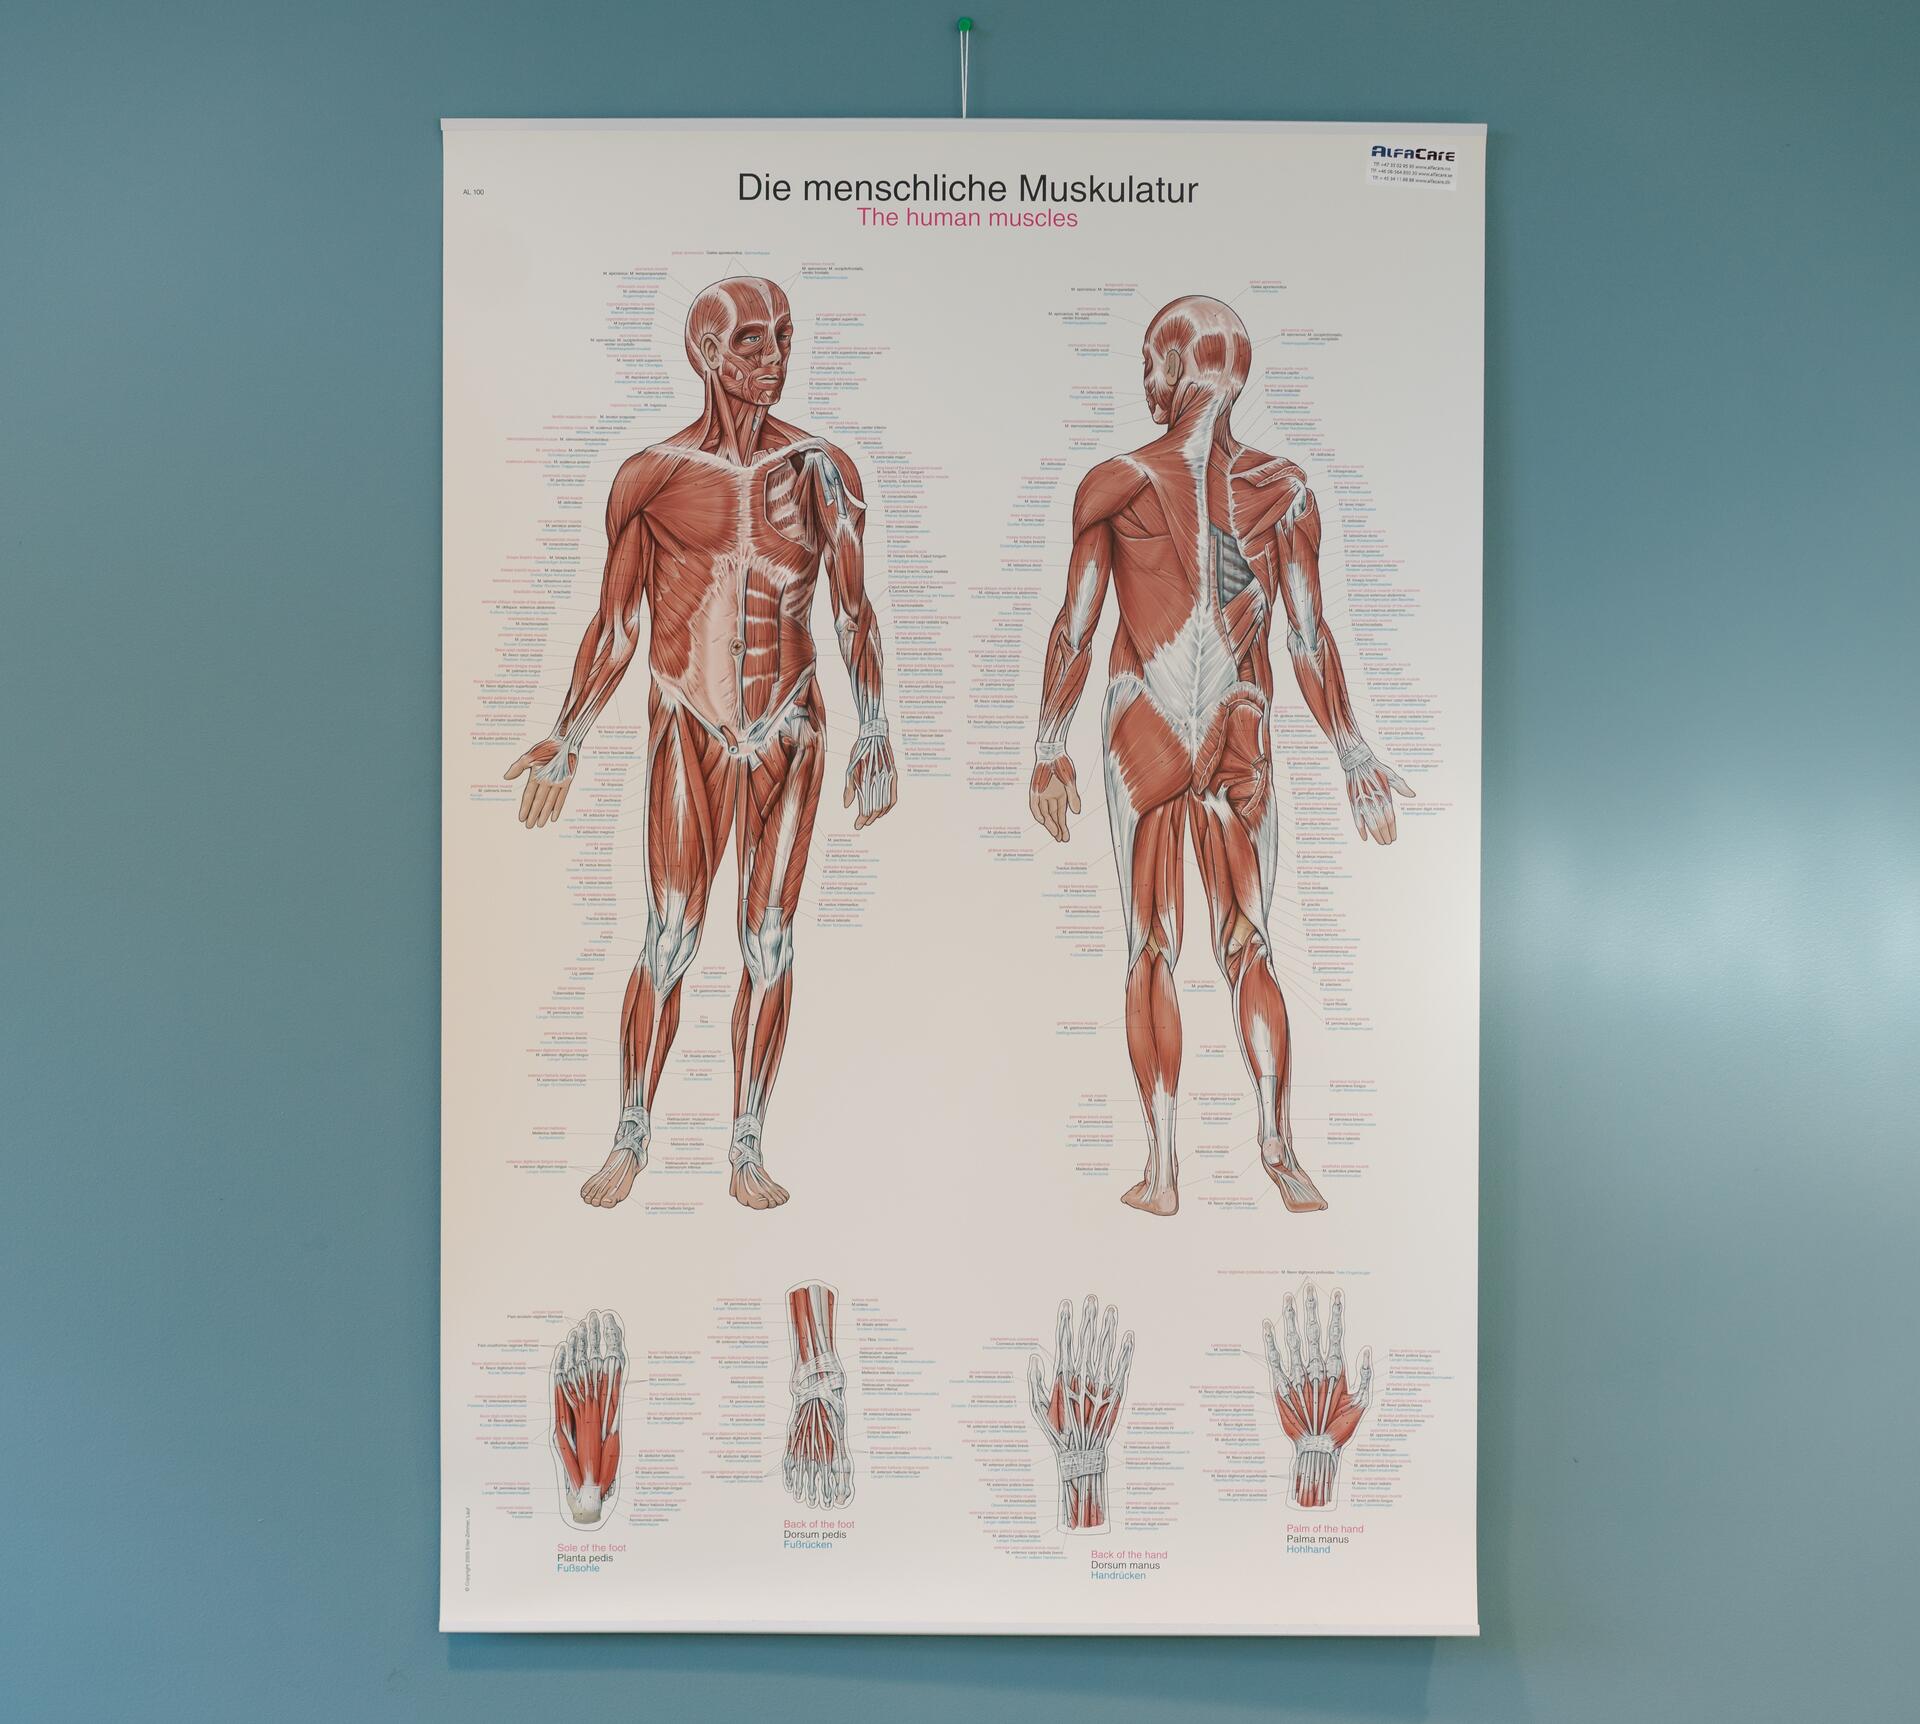 Bilde av plakat som viser menneskets anatomi